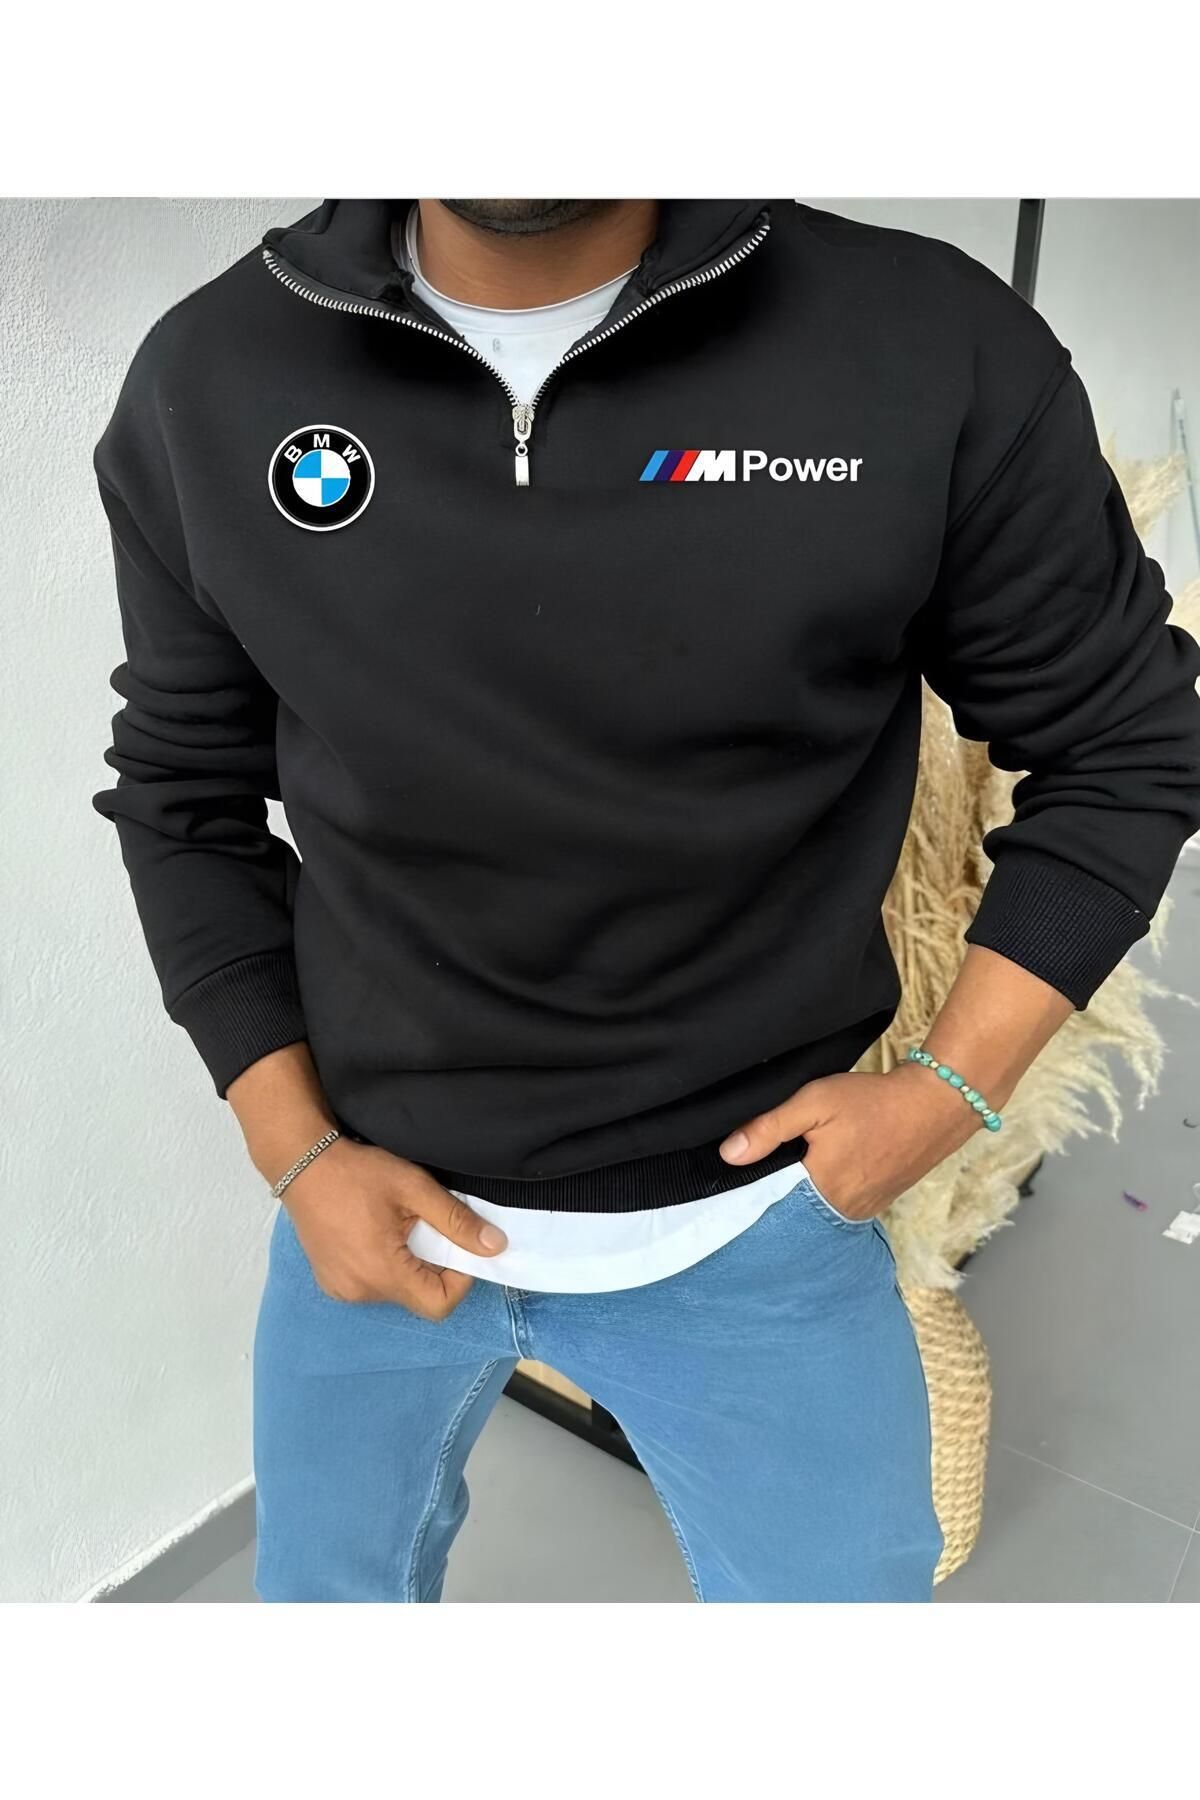 NewCabin Yarım Fermuarlı Spor Baskılı Pamuklu Tekli Sweatshirt